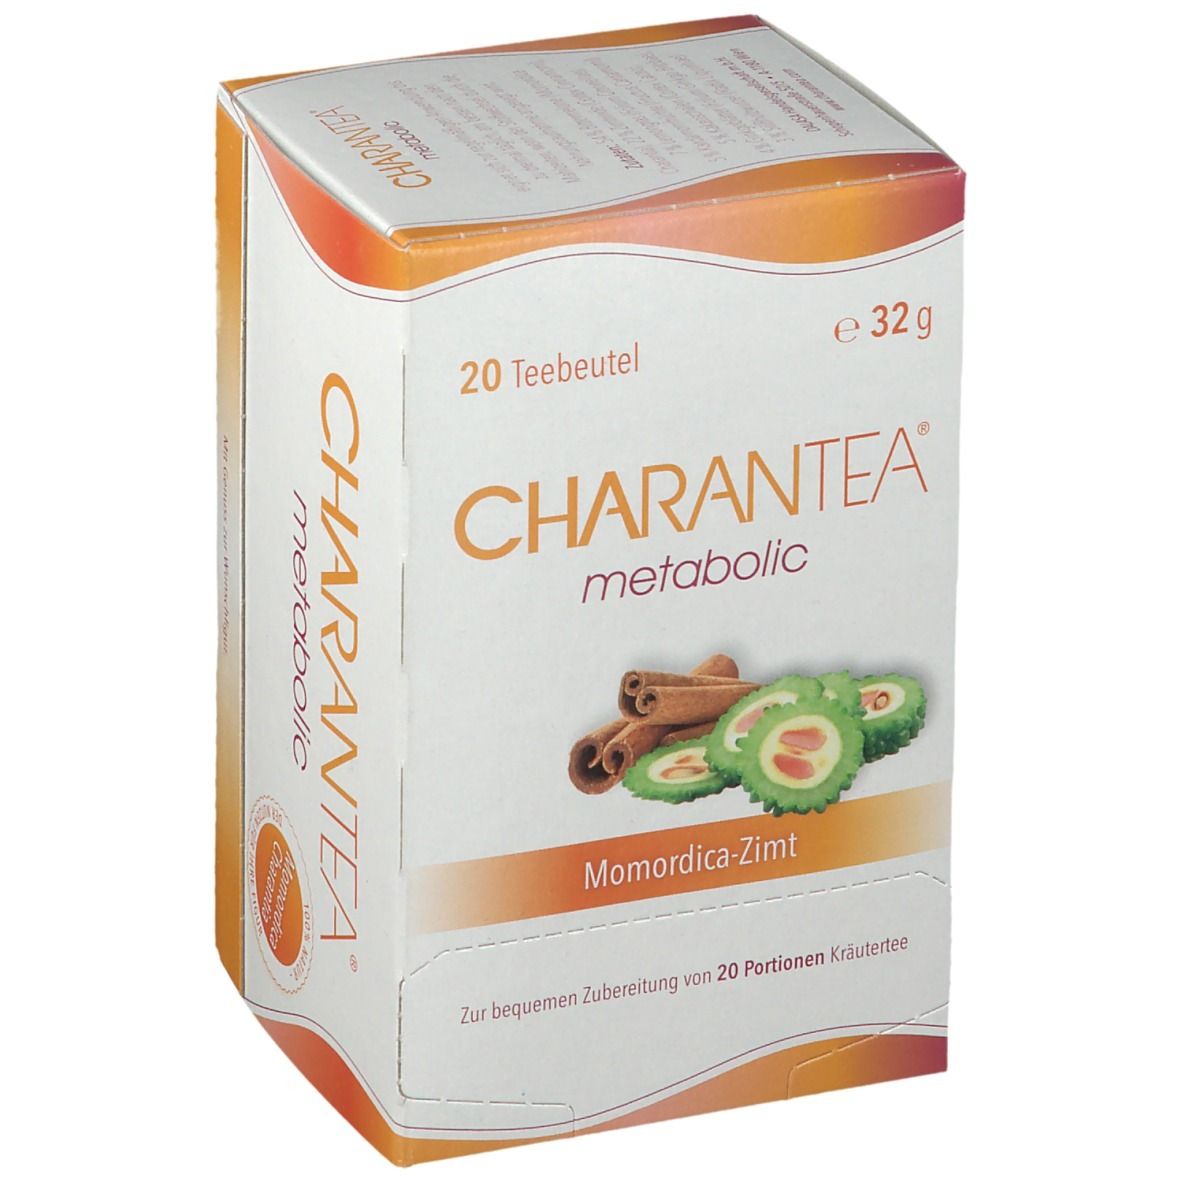 CHARANTEA® metabolic Momordica-Zimt